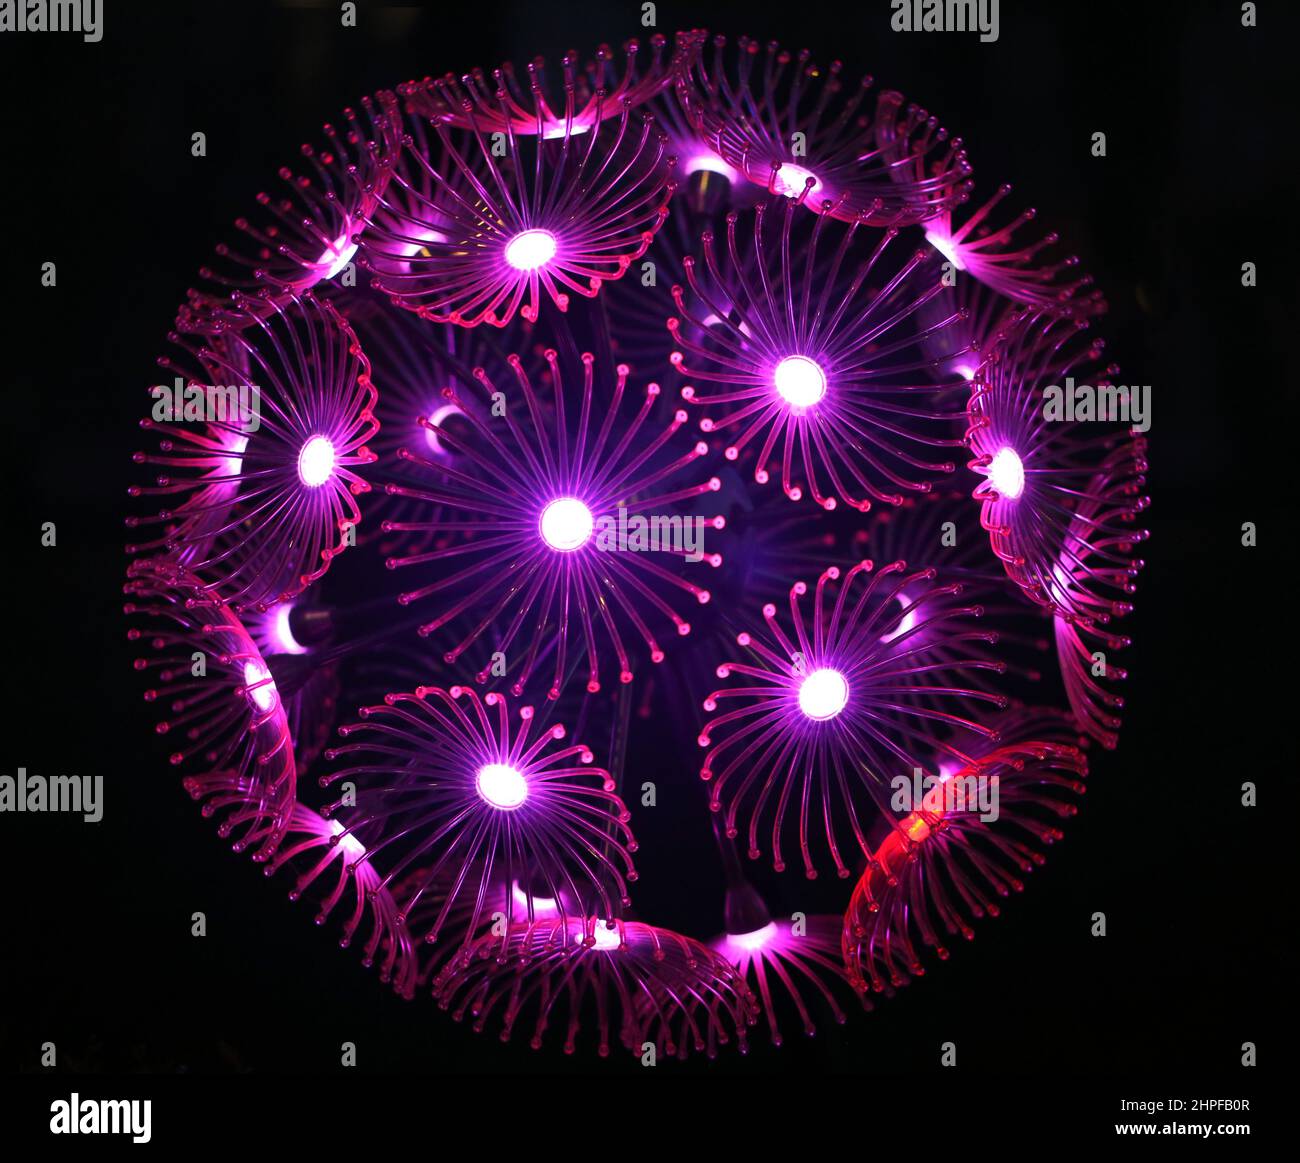 Foto di una sfera di dente di leone incandescente nella notte. Un esempio di design moderno con poster. Foto Stock